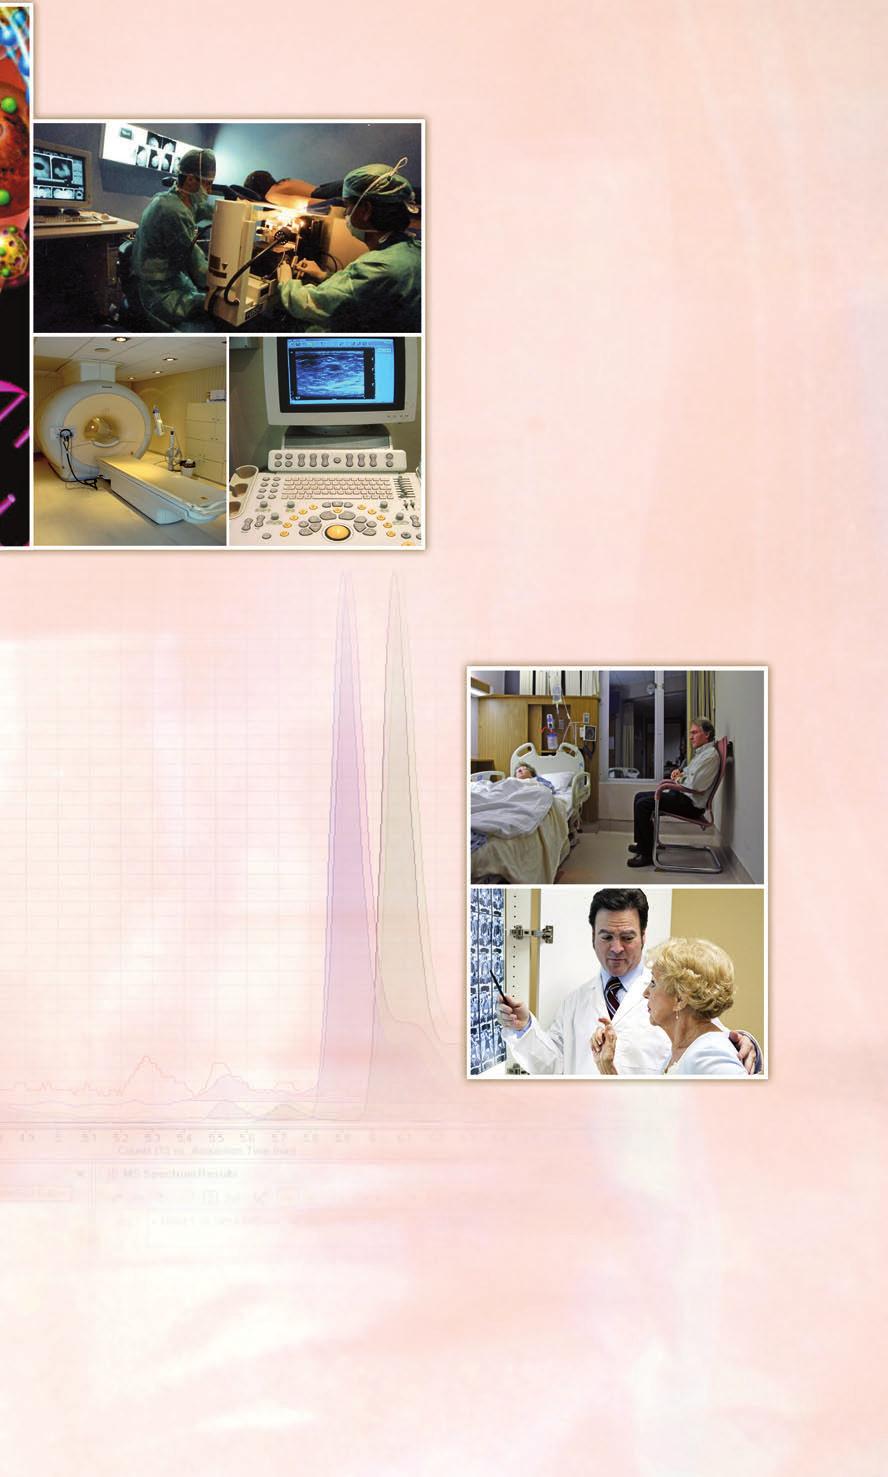 11.00 h. Dr. José María Román Santamaría Programa de cáncer de mama en el Hospital San Carlos 11.10 h. Dra. María Herranz Vidaurrázaga El Plan de prevención cáncer de mama en Madrid Salud Descanso 12.